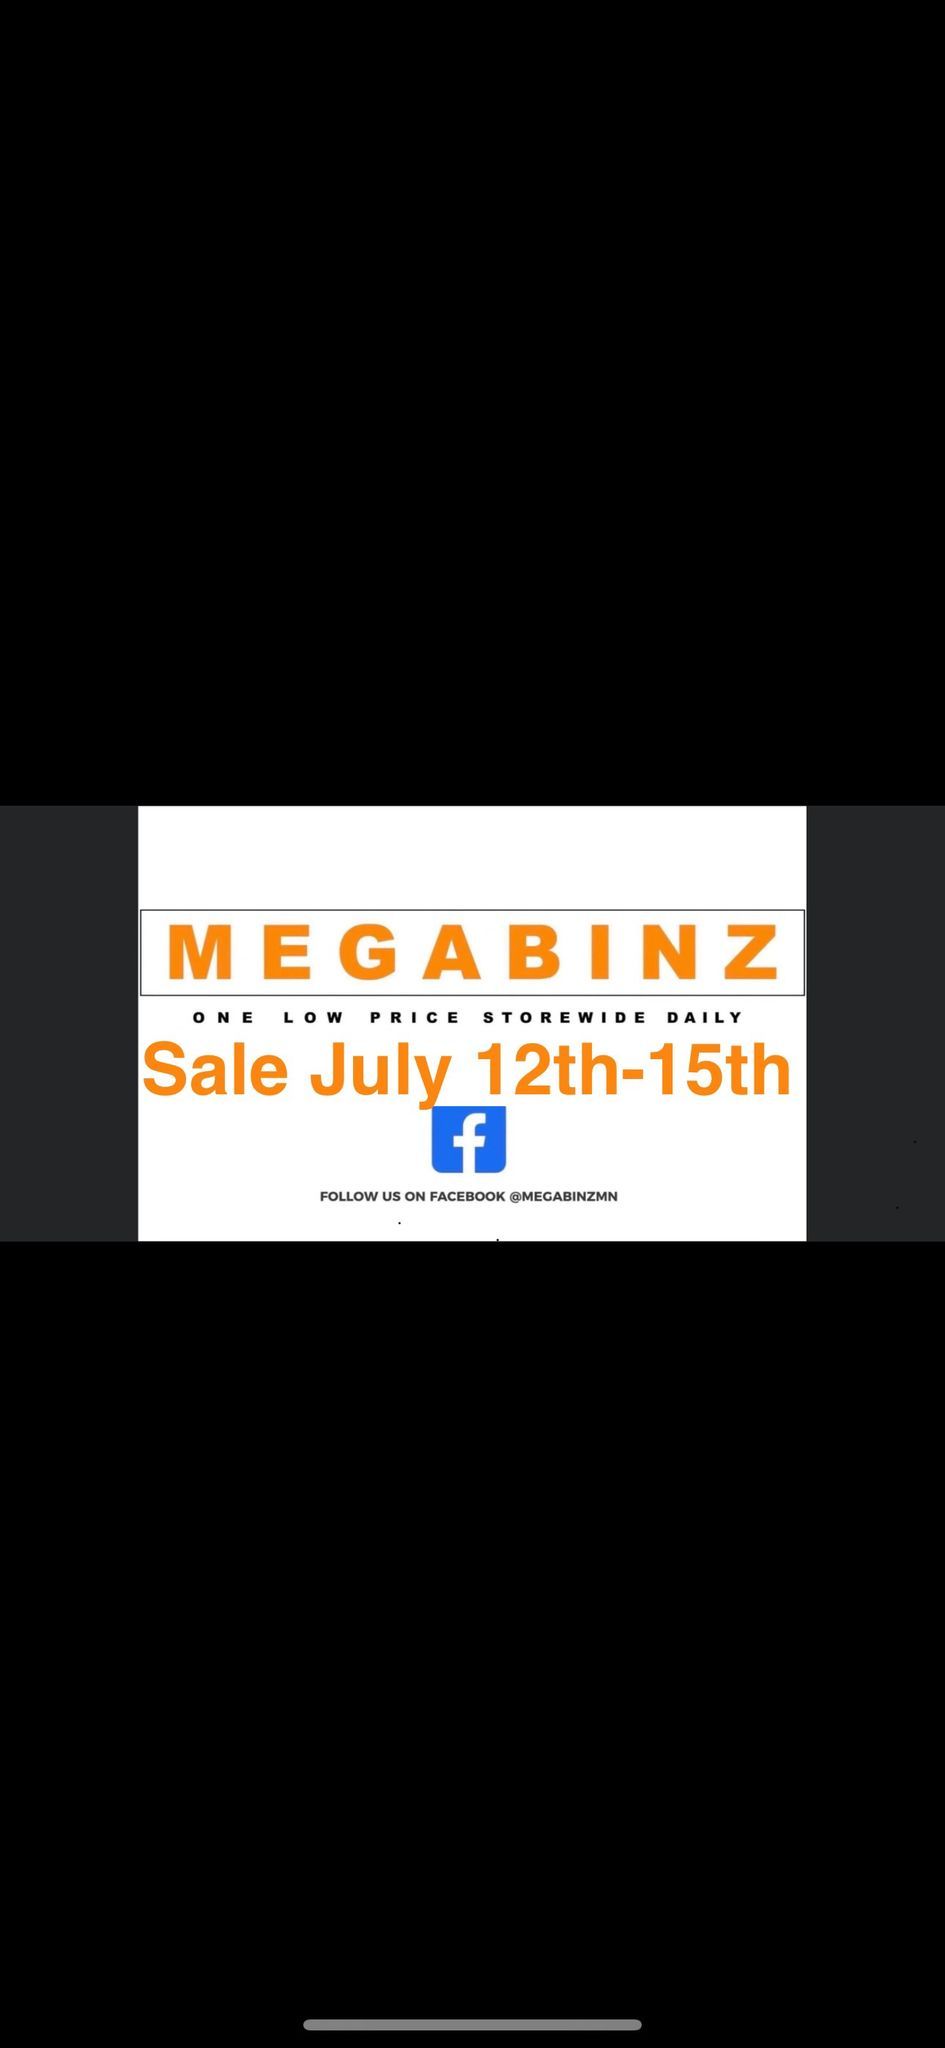 MEGABINZ Sale July 12th-15th